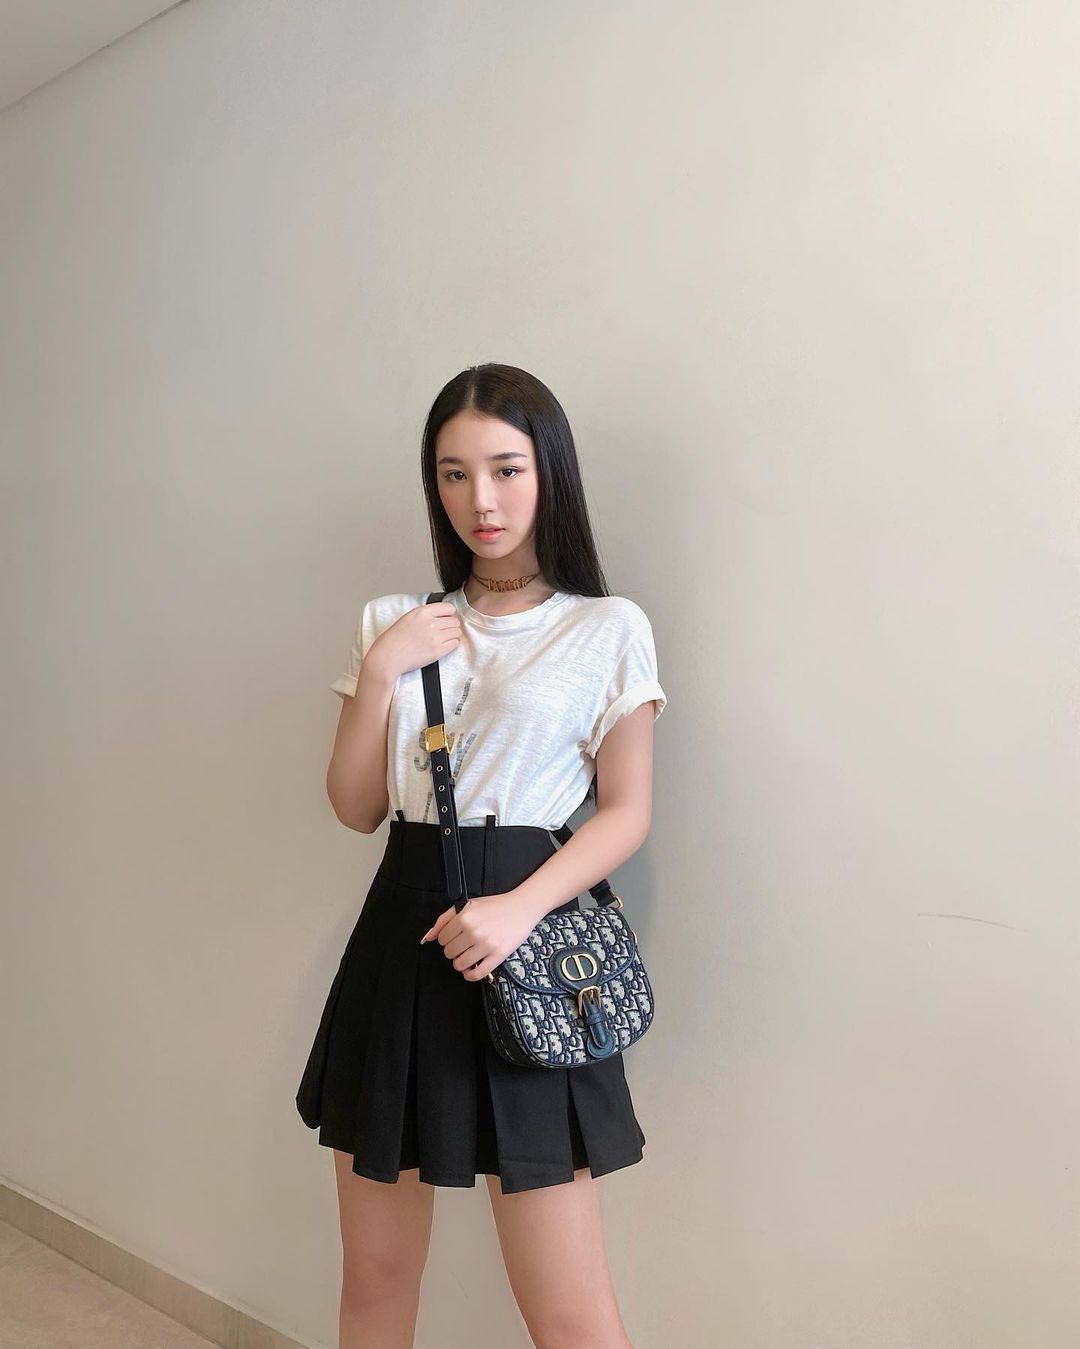 Chân váy xếp ly màu đen trơn kết hợp với áo phông trắng là combo đơn giản nhưng vô cùng hiệu quả mà các bạn gái có thể học tập cho thời trang dạo phố của mình.